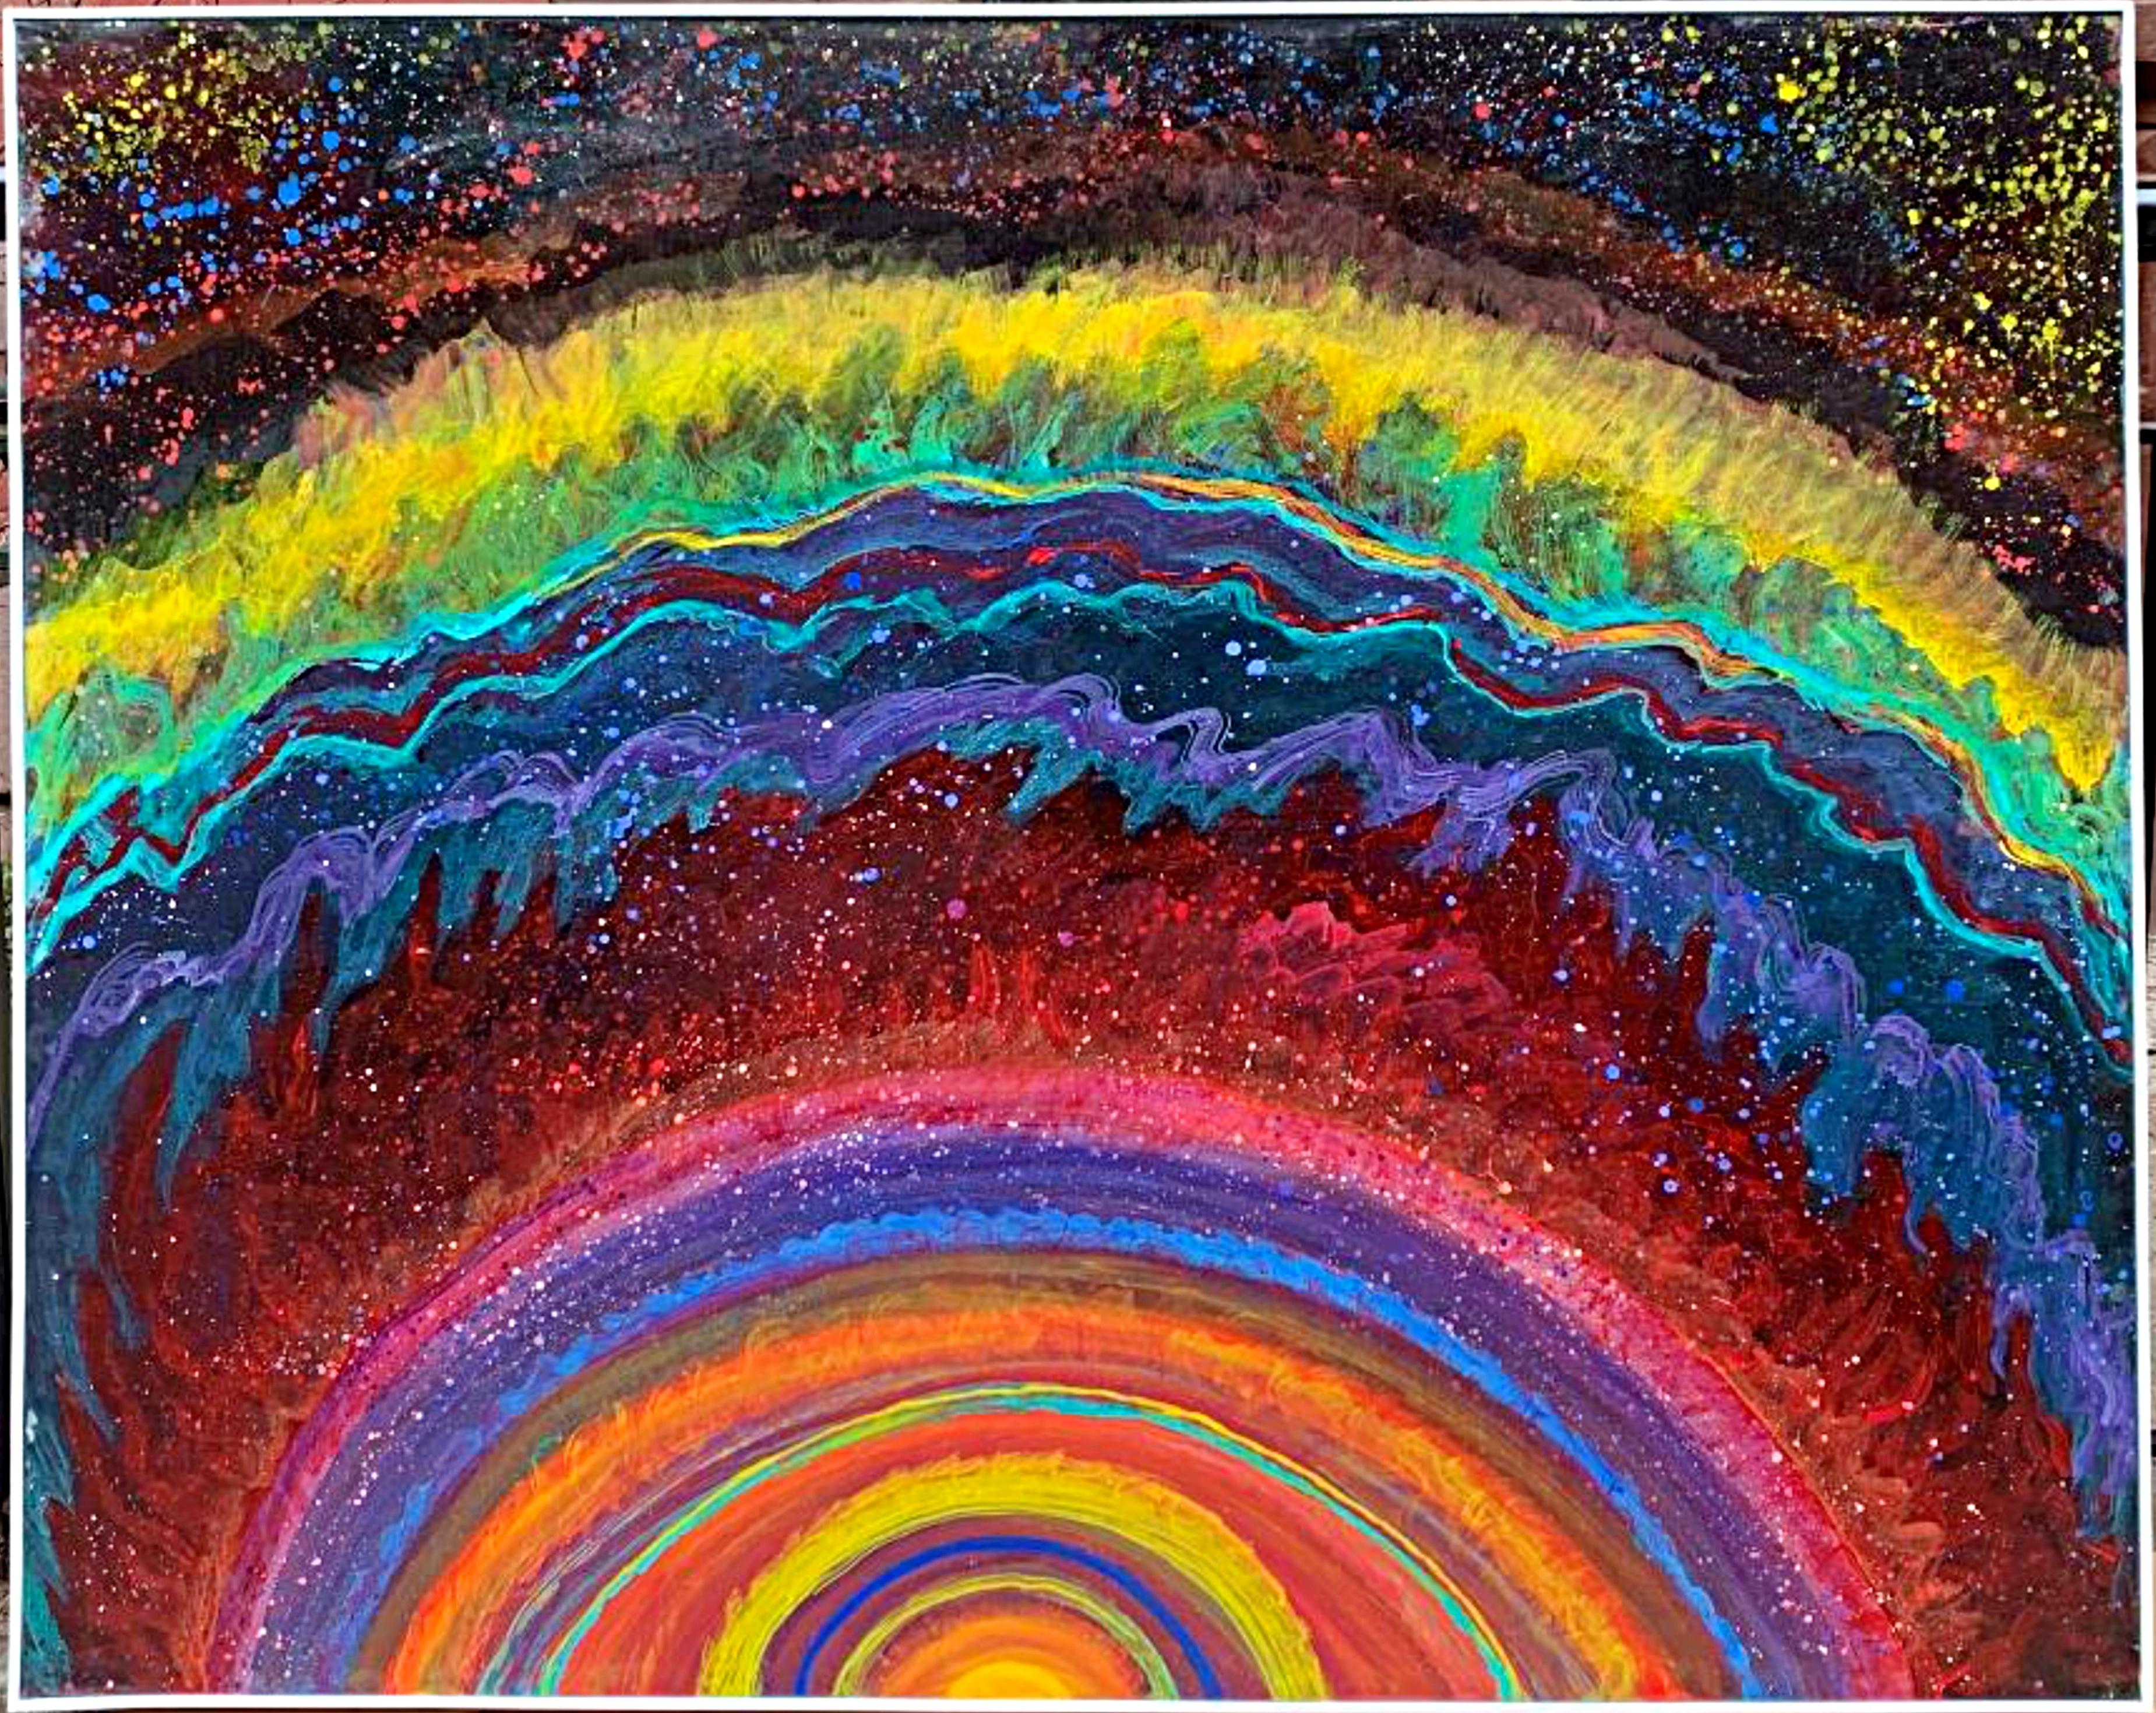 Figurative Painting Thelma Appel - Gravity's Rainbow, peinture sur toile unique signée de la célèbre artiste féminine